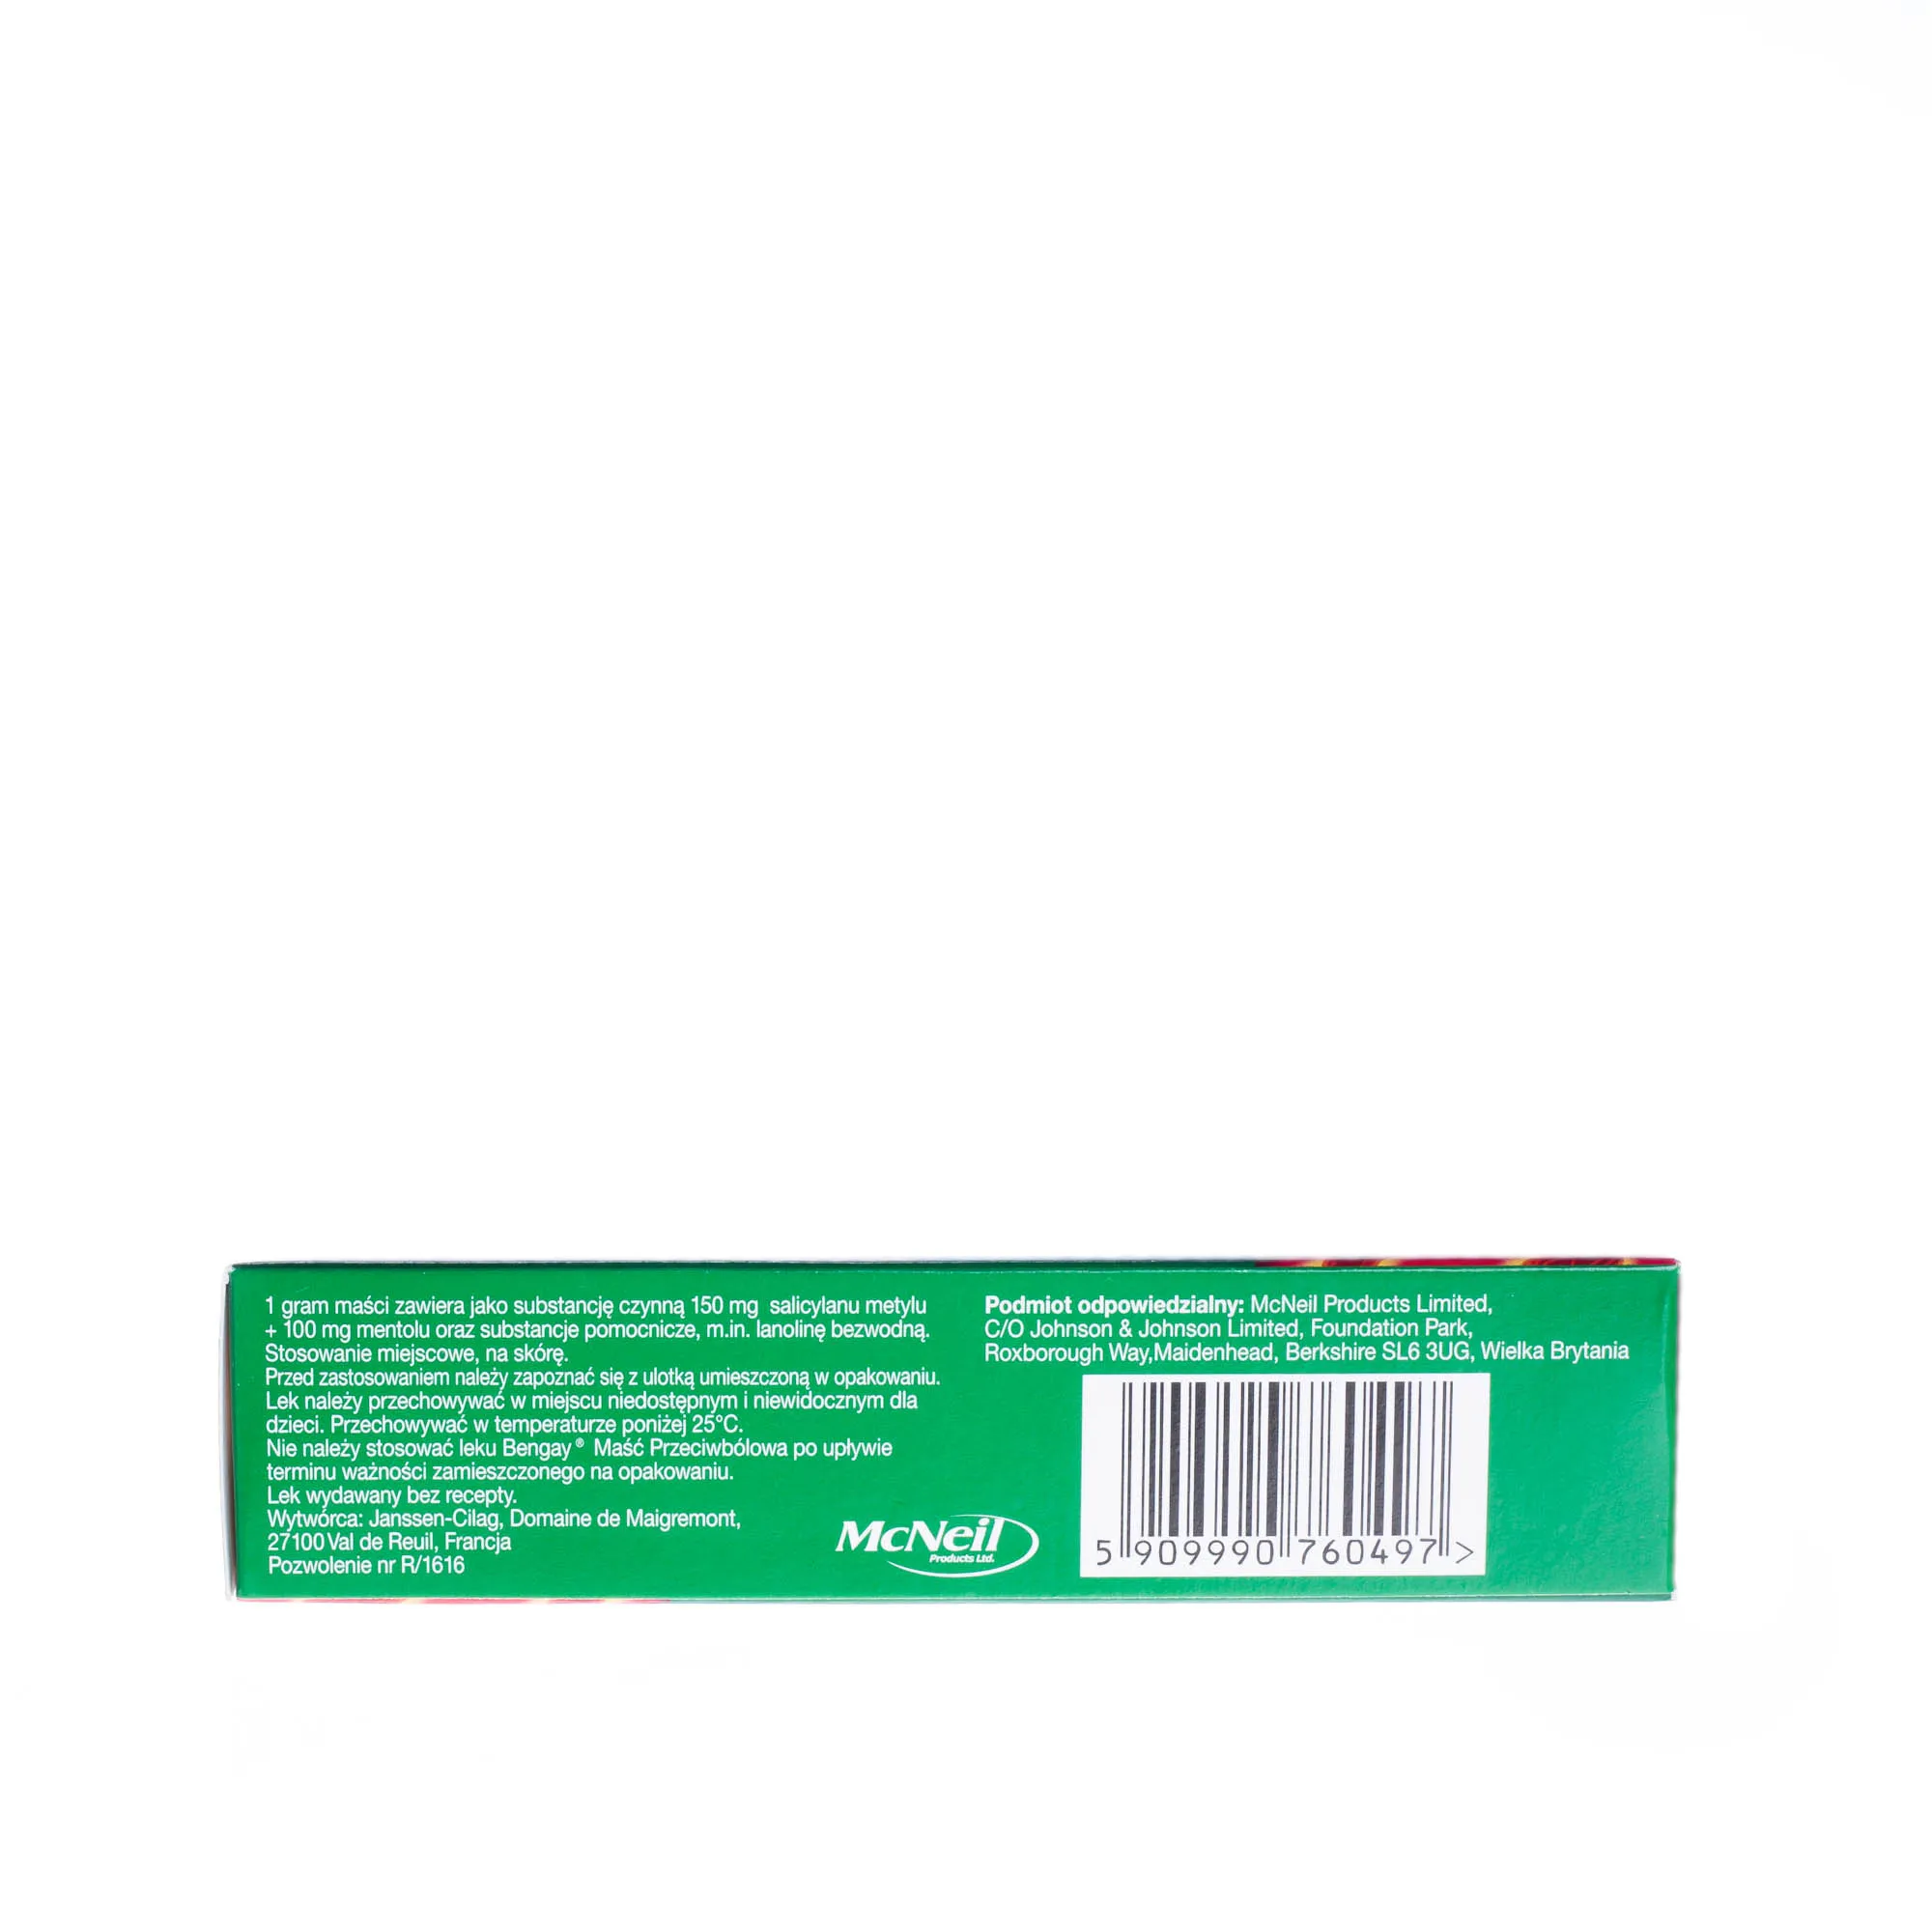 Bengay Maść Przeciwbólowa, (150 mg + 100 mg)/g, maść, 50 g 